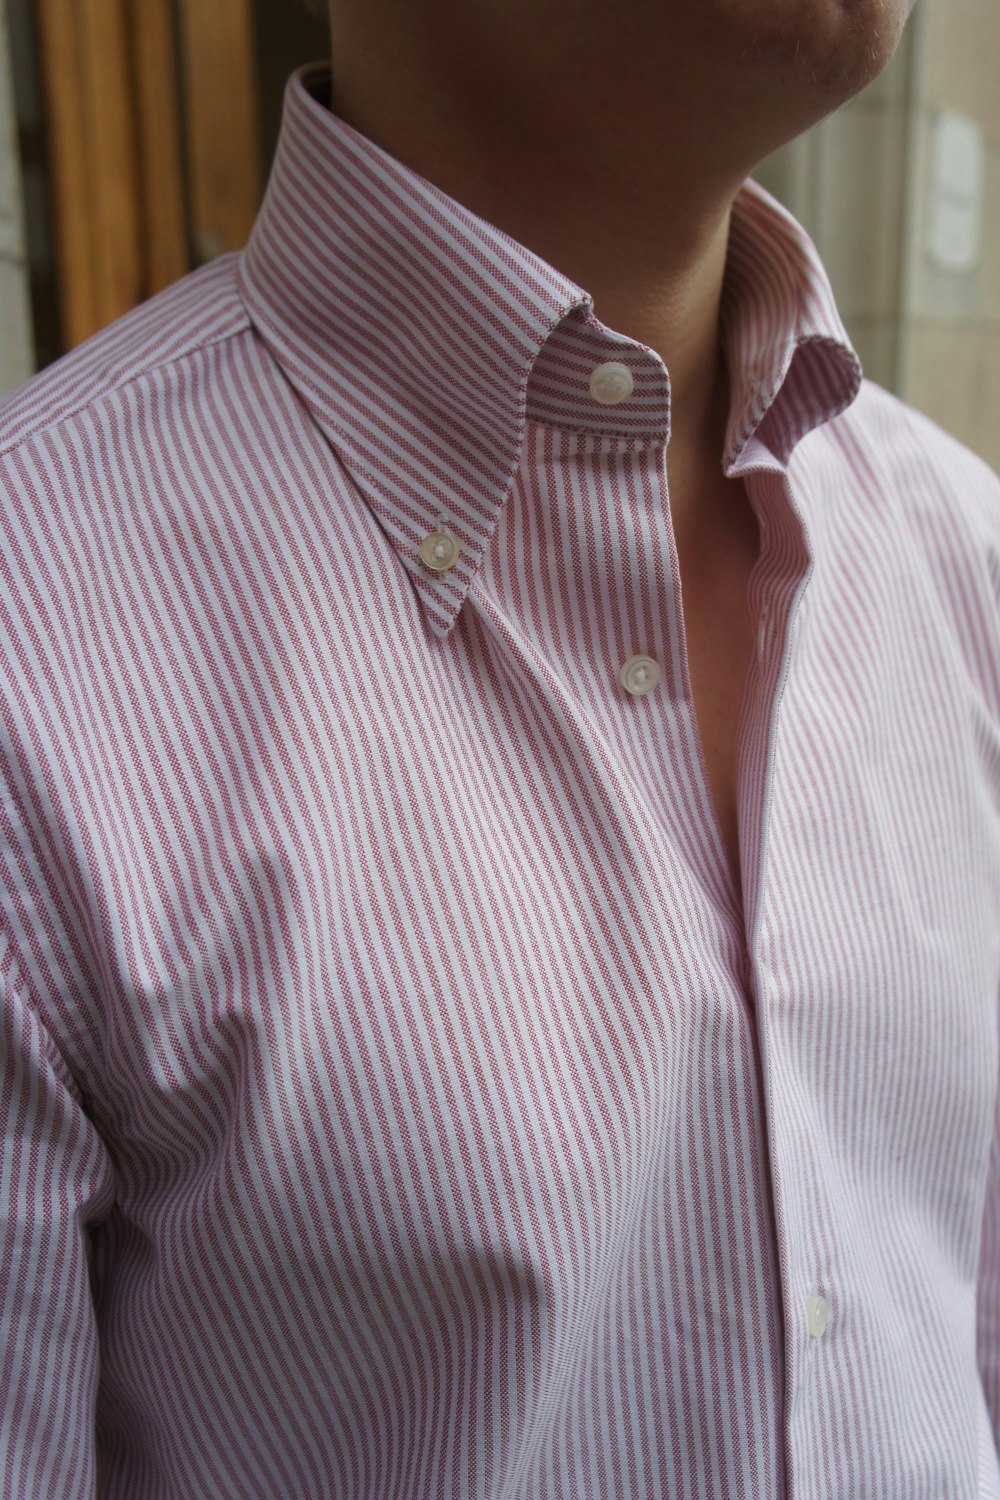 University Stripe Oxford Button Down Shirt - Burgundy/White - Granqvist ...